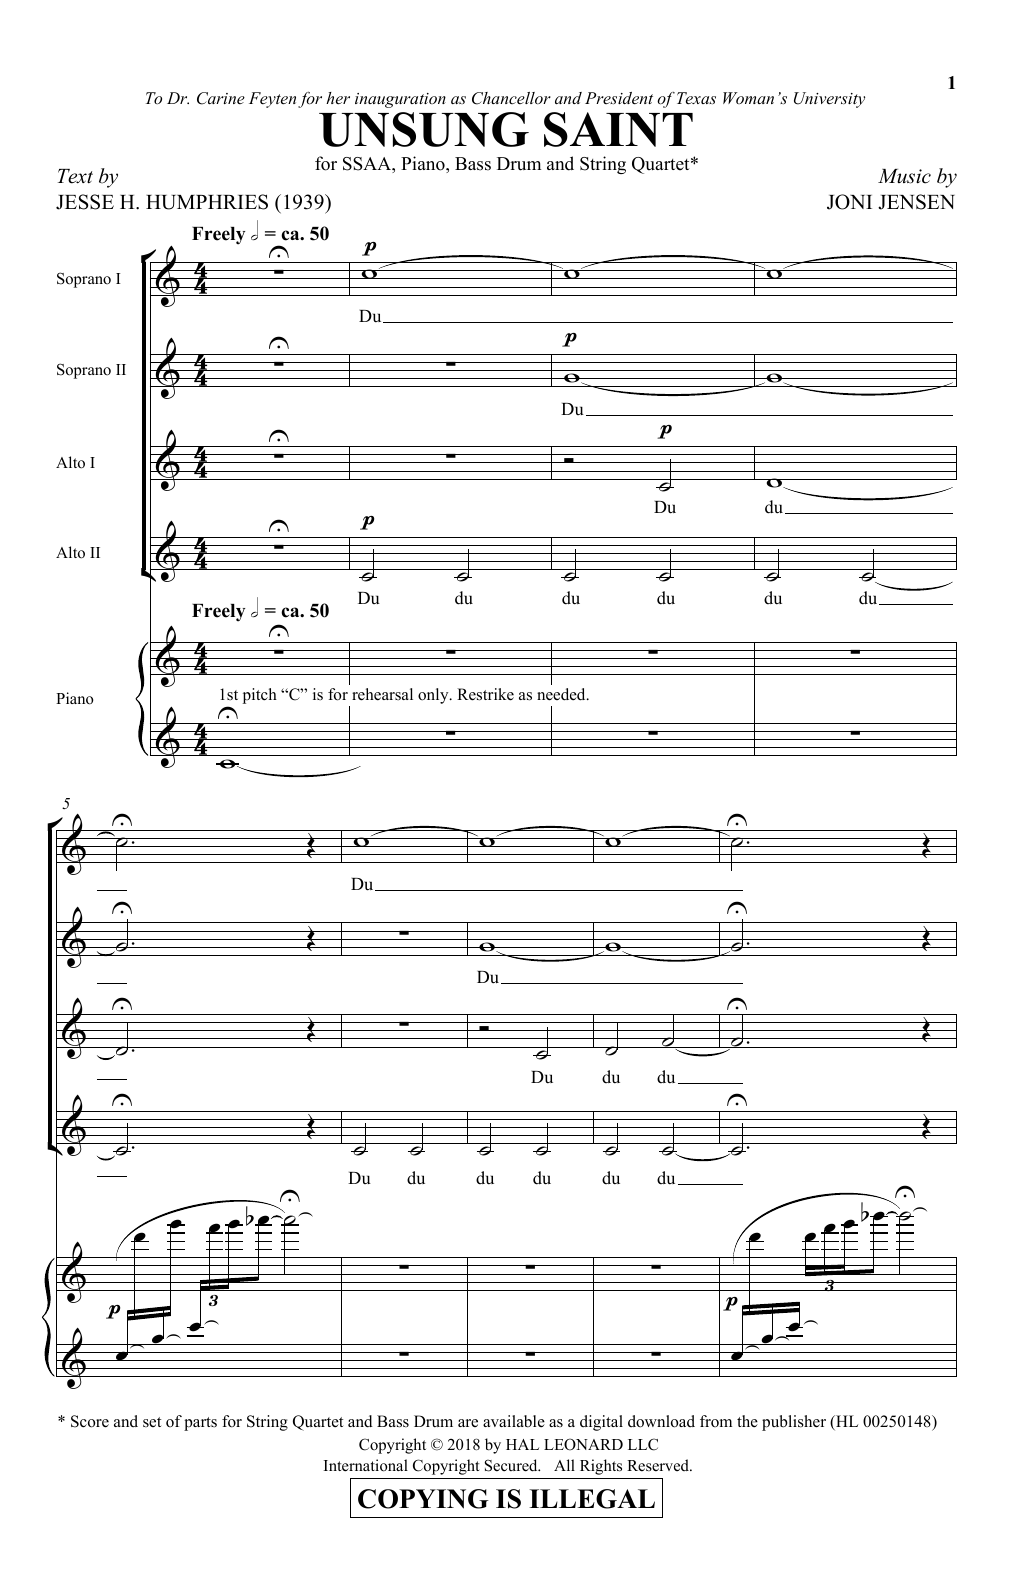 Joni Jensen Unsung Saint sheet music notes and chords arranged for SSAA Choir